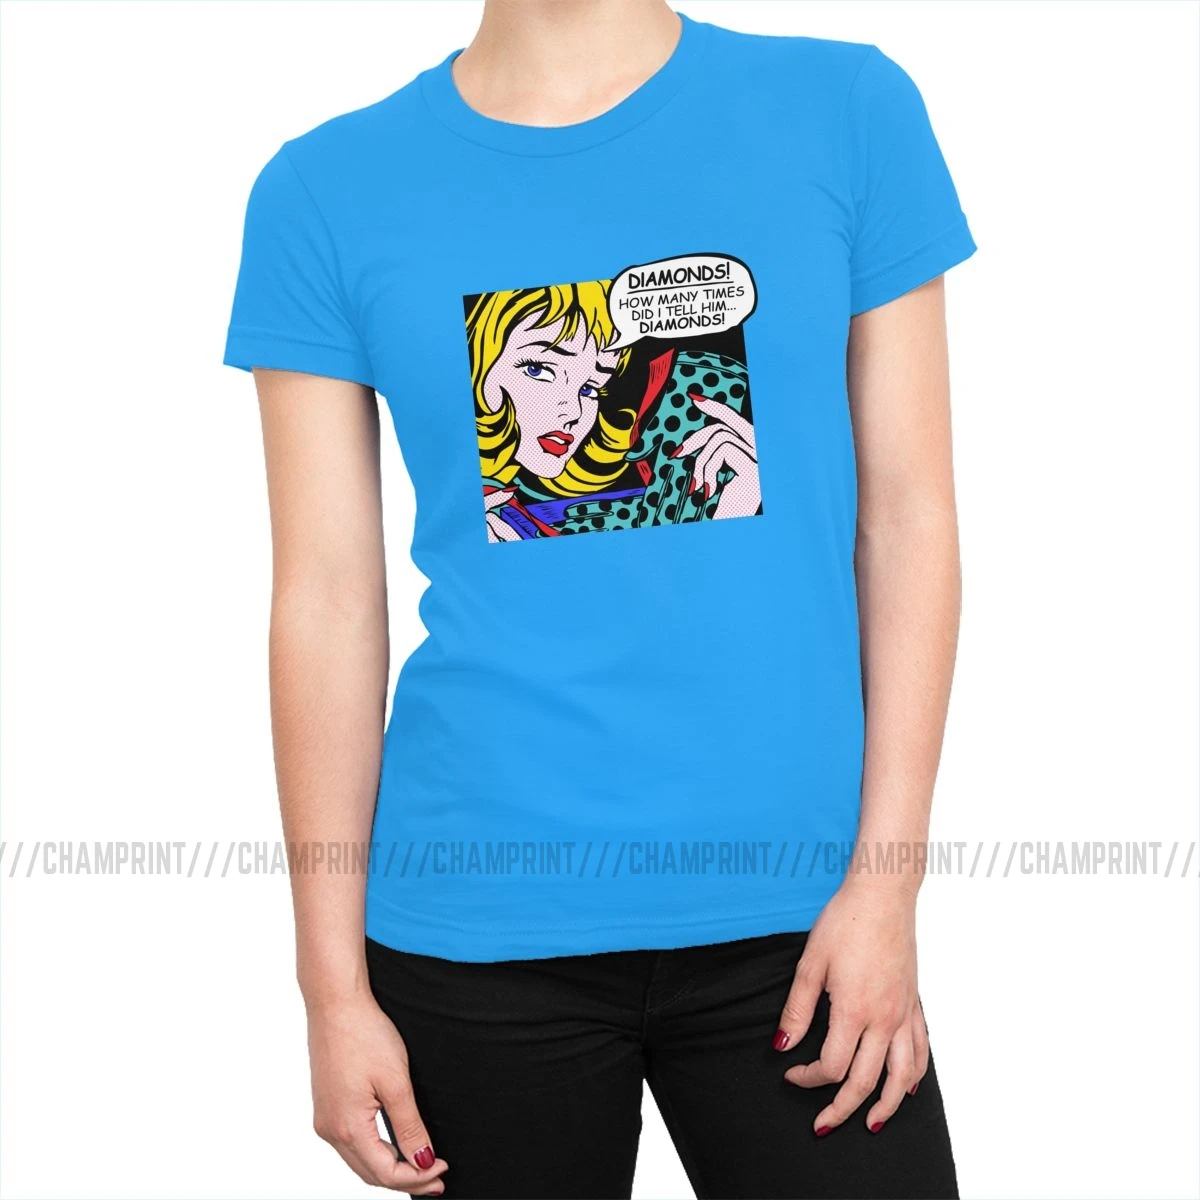 Roy Lichtenstein комическое искусство девушка с перчатками футболки женские корейский стиль поп-арт футболка футболки tumblr топы Женская одежда - Цвет: Мятный